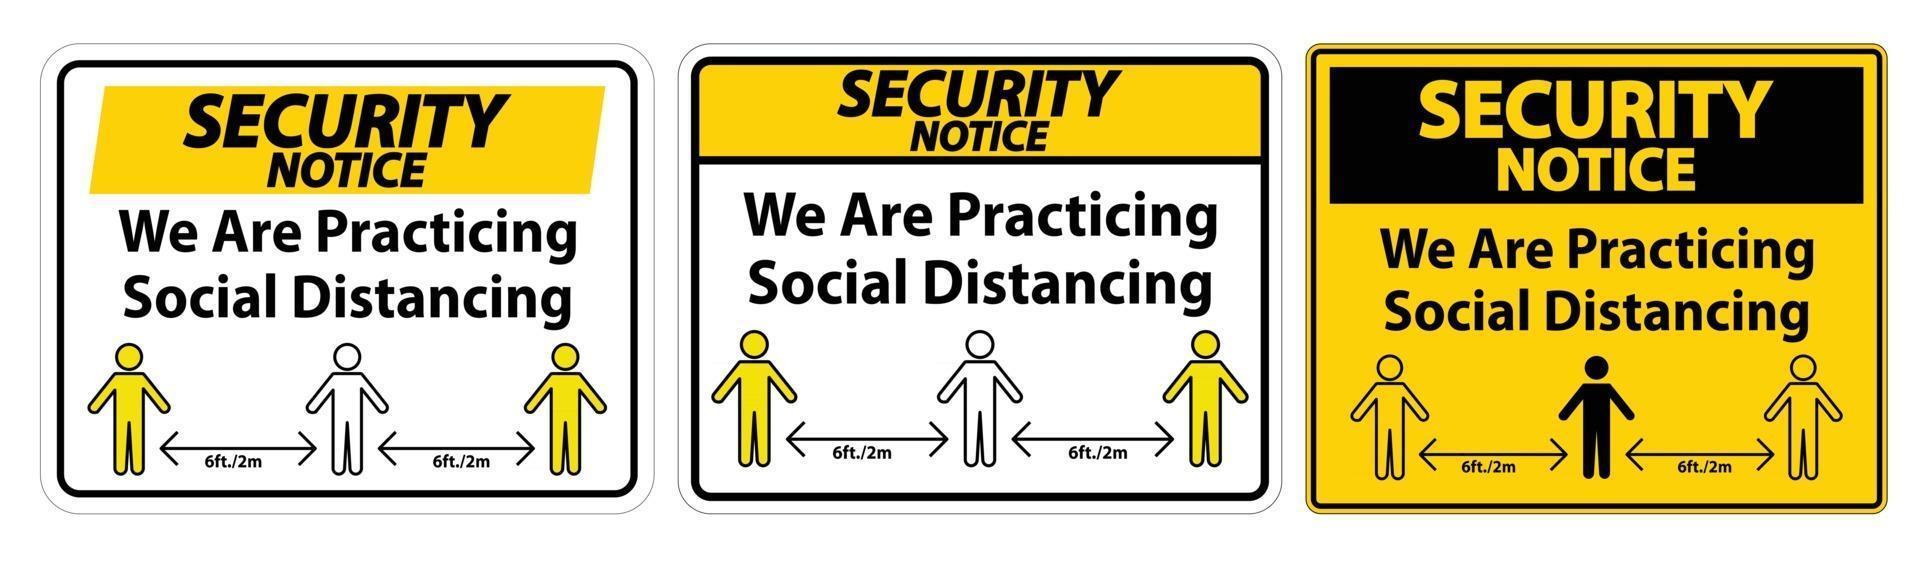 avviso di sicurezza che stiamo praticando segno di distanza sociale isolato su sfondo bianco, illustrazione vettoriale eps.10